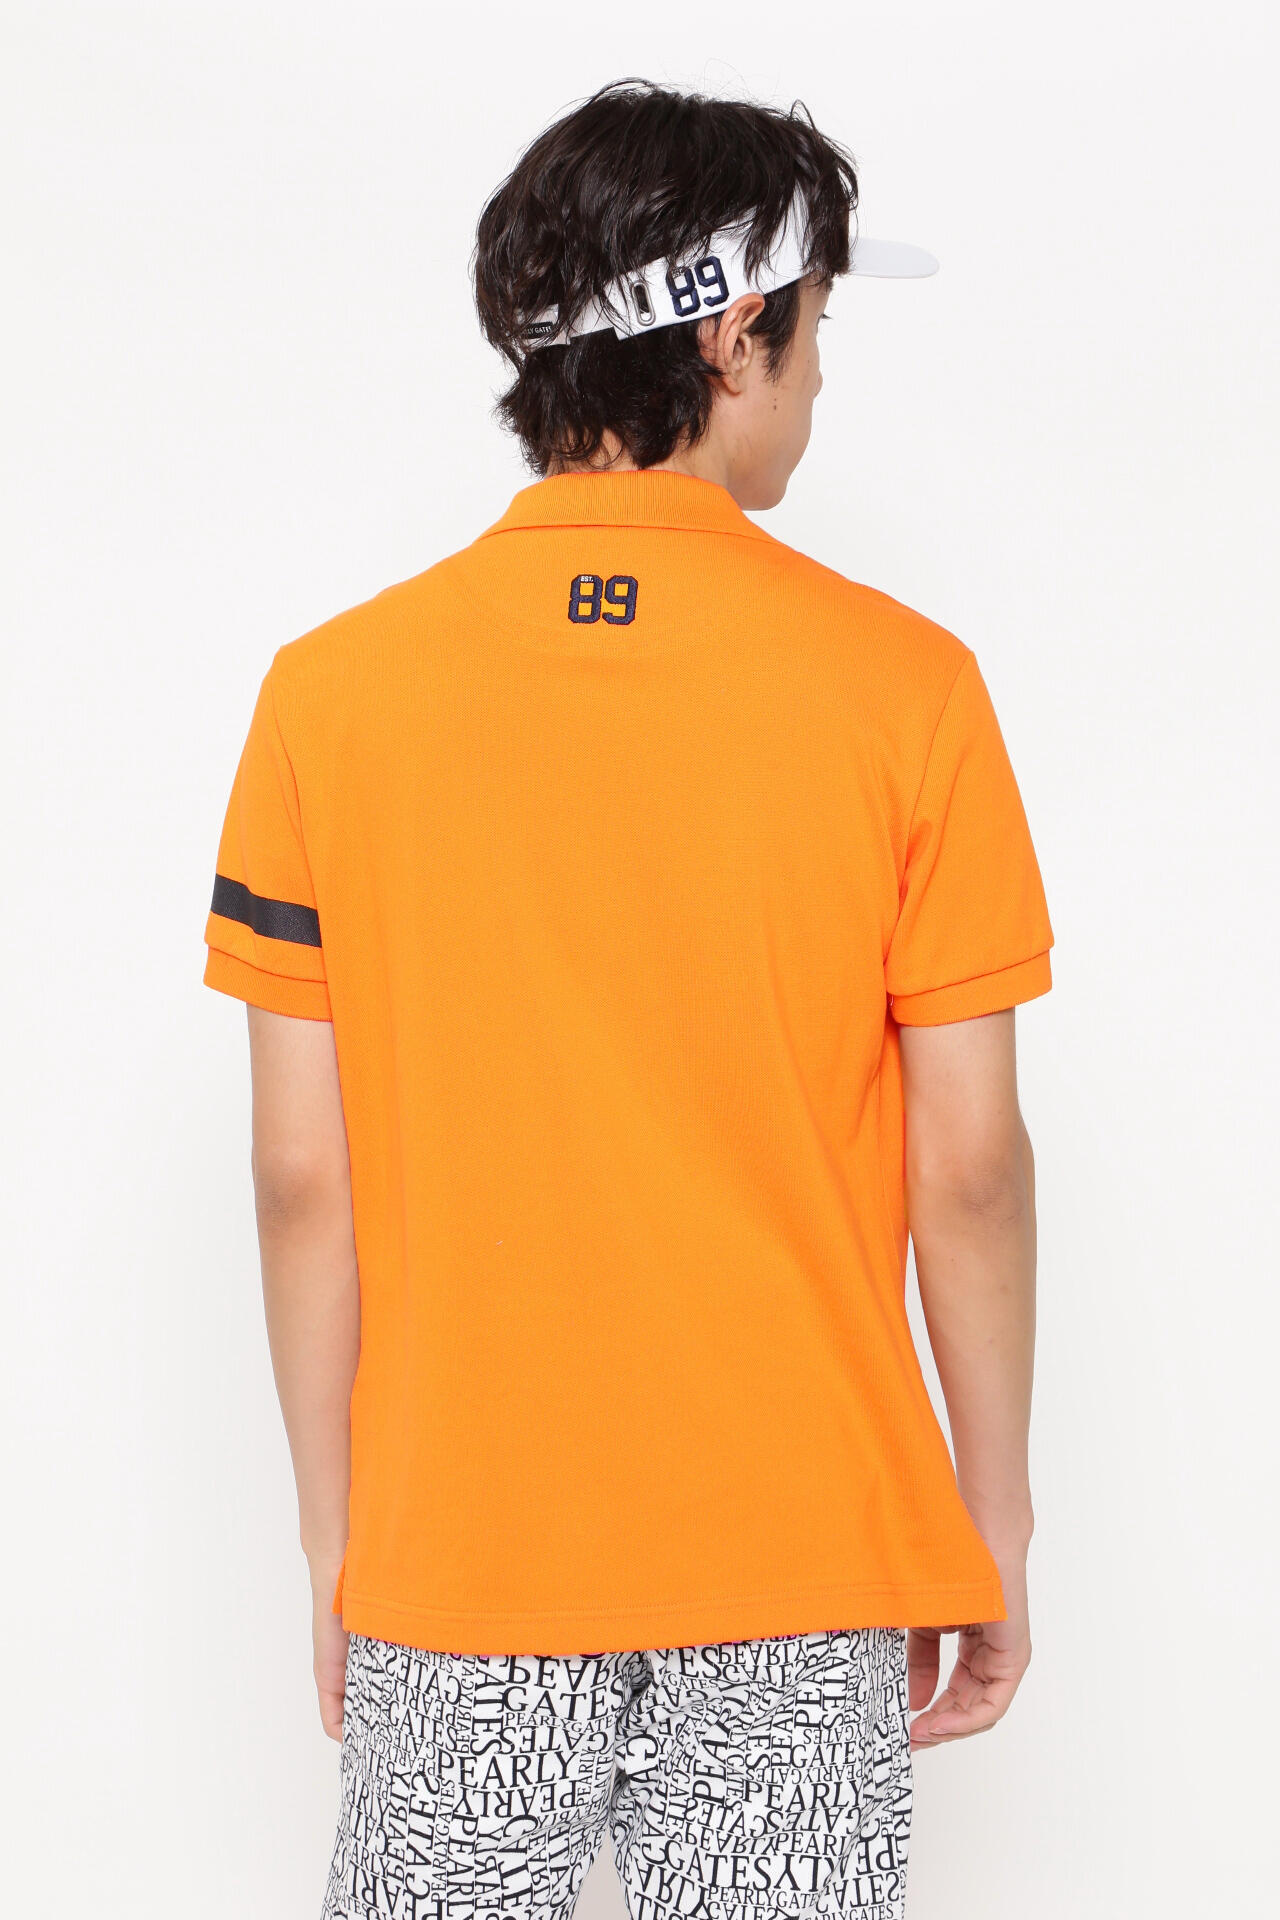 600mm身幅パーリーゲイツ ゴルフ ポロシャツ 日本製 オレンジ サイズ1 レディース